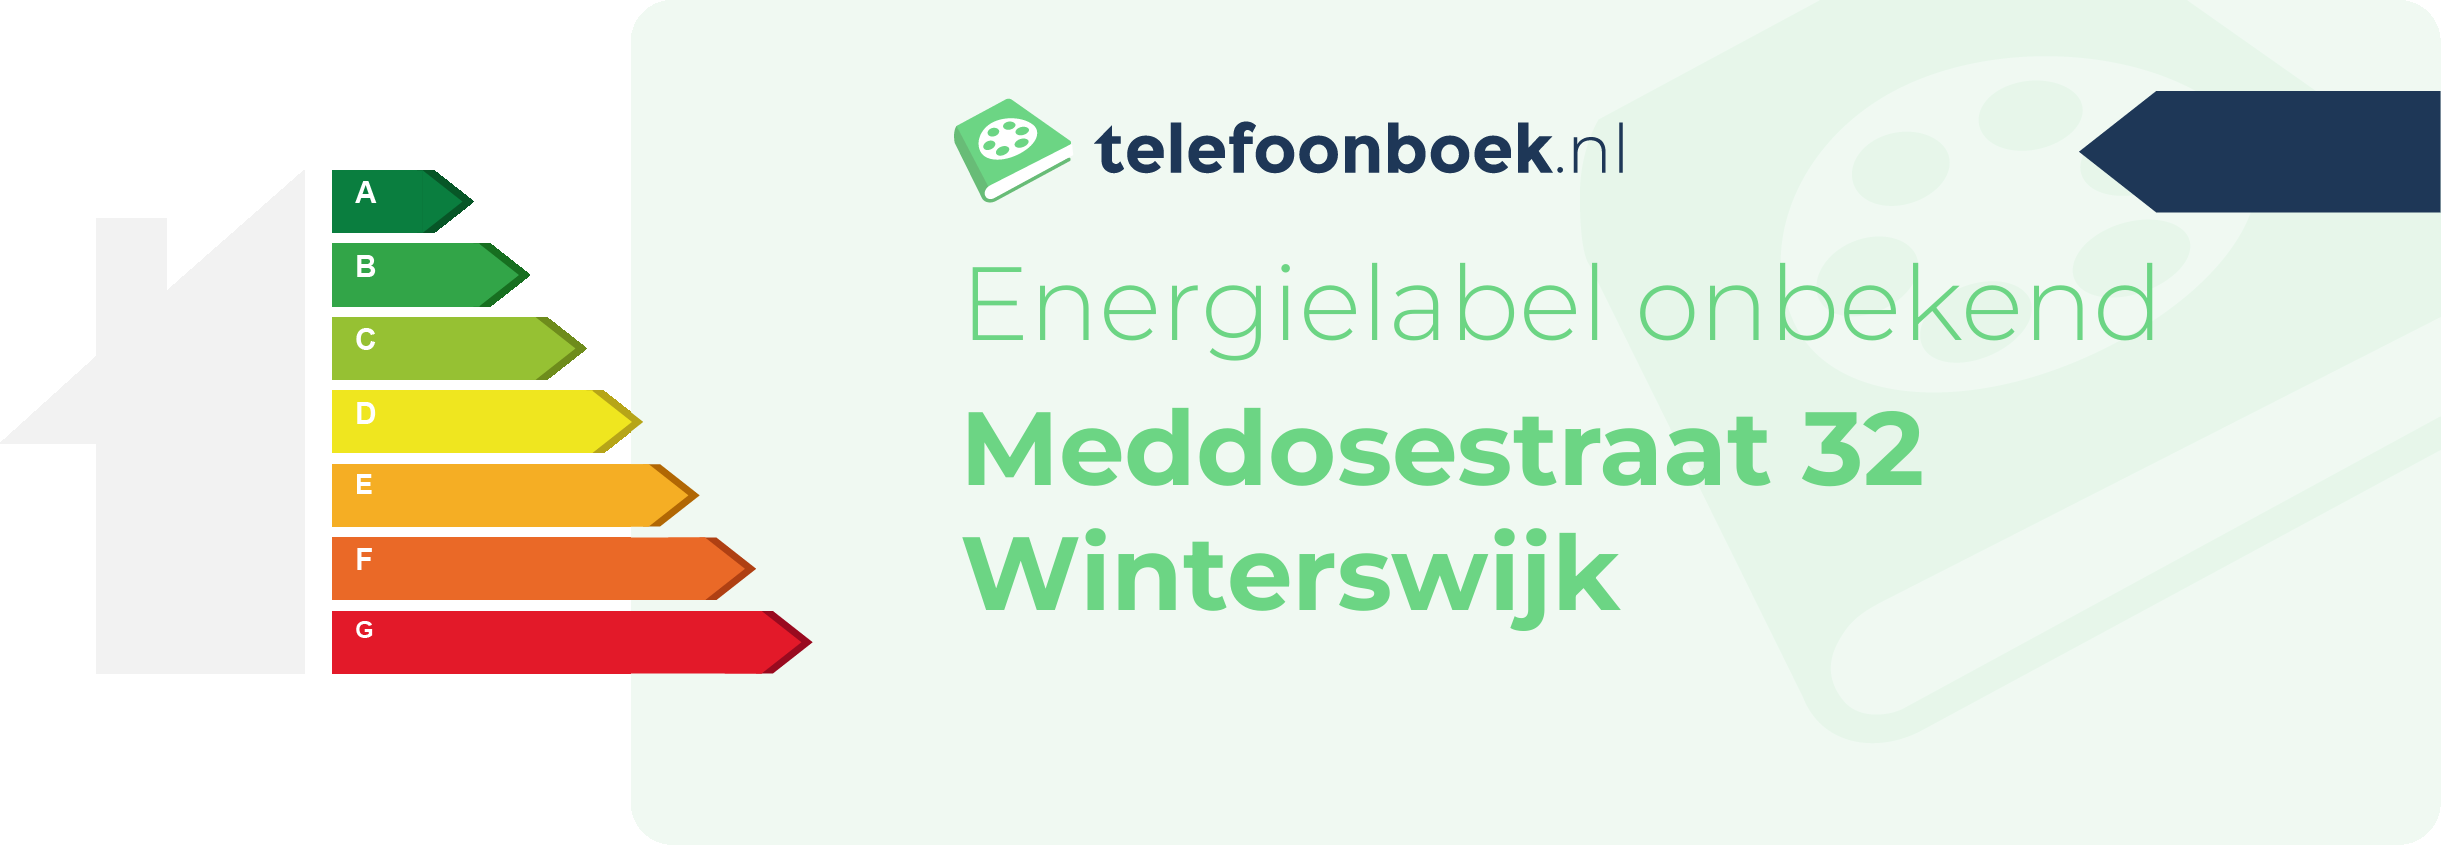 Energielabel Meddosestraat 32 Winterswijk